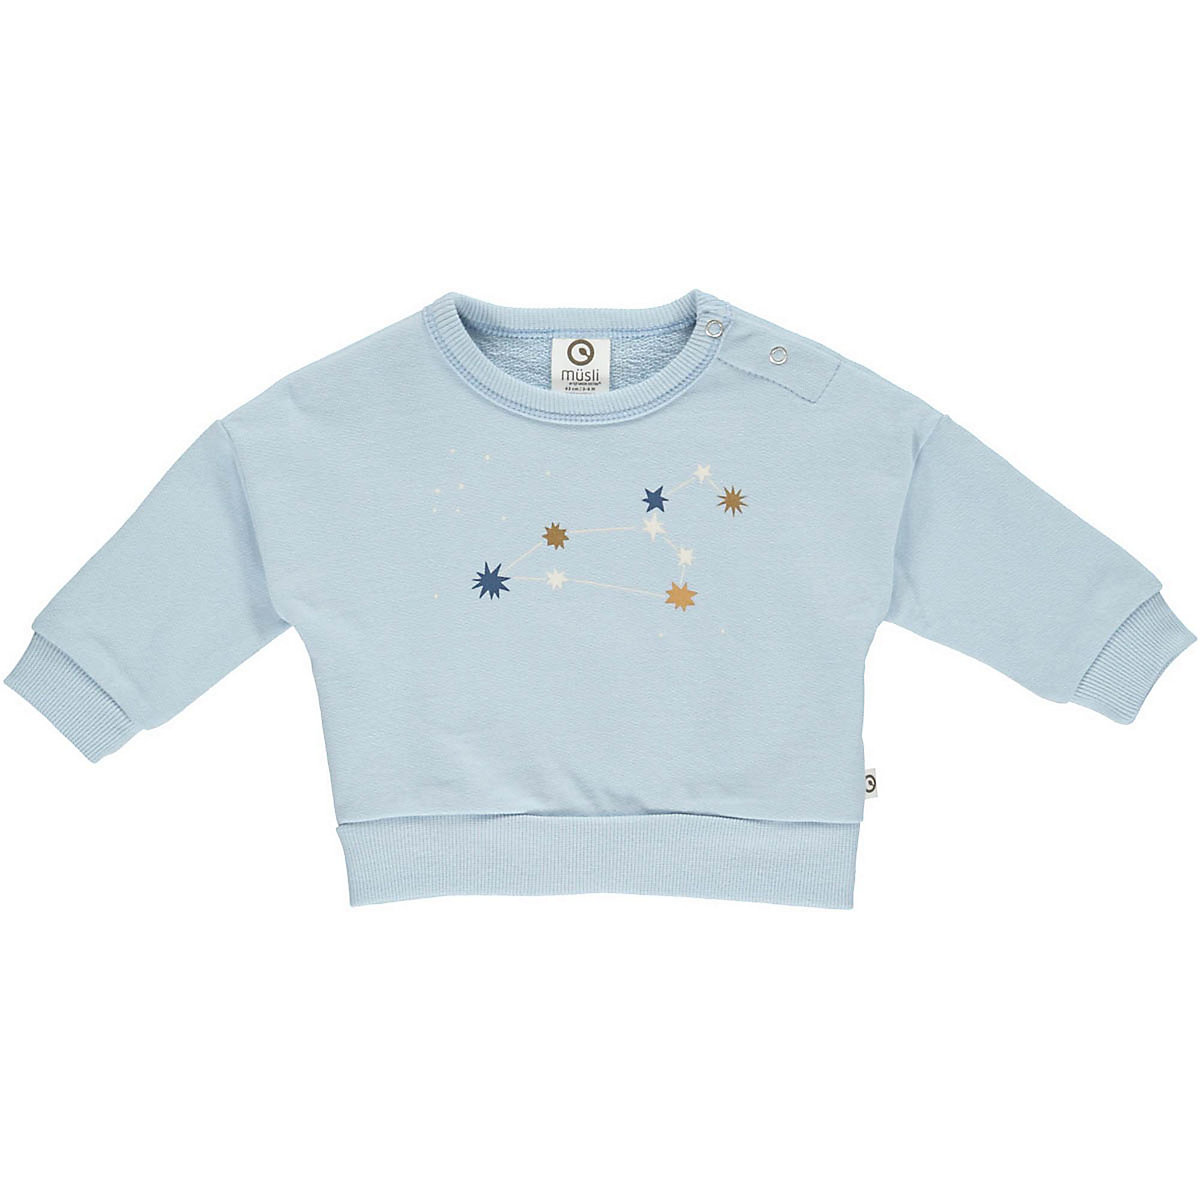 Müsli by GREEN COTTON Babysweatshirt für Jungen blue denim